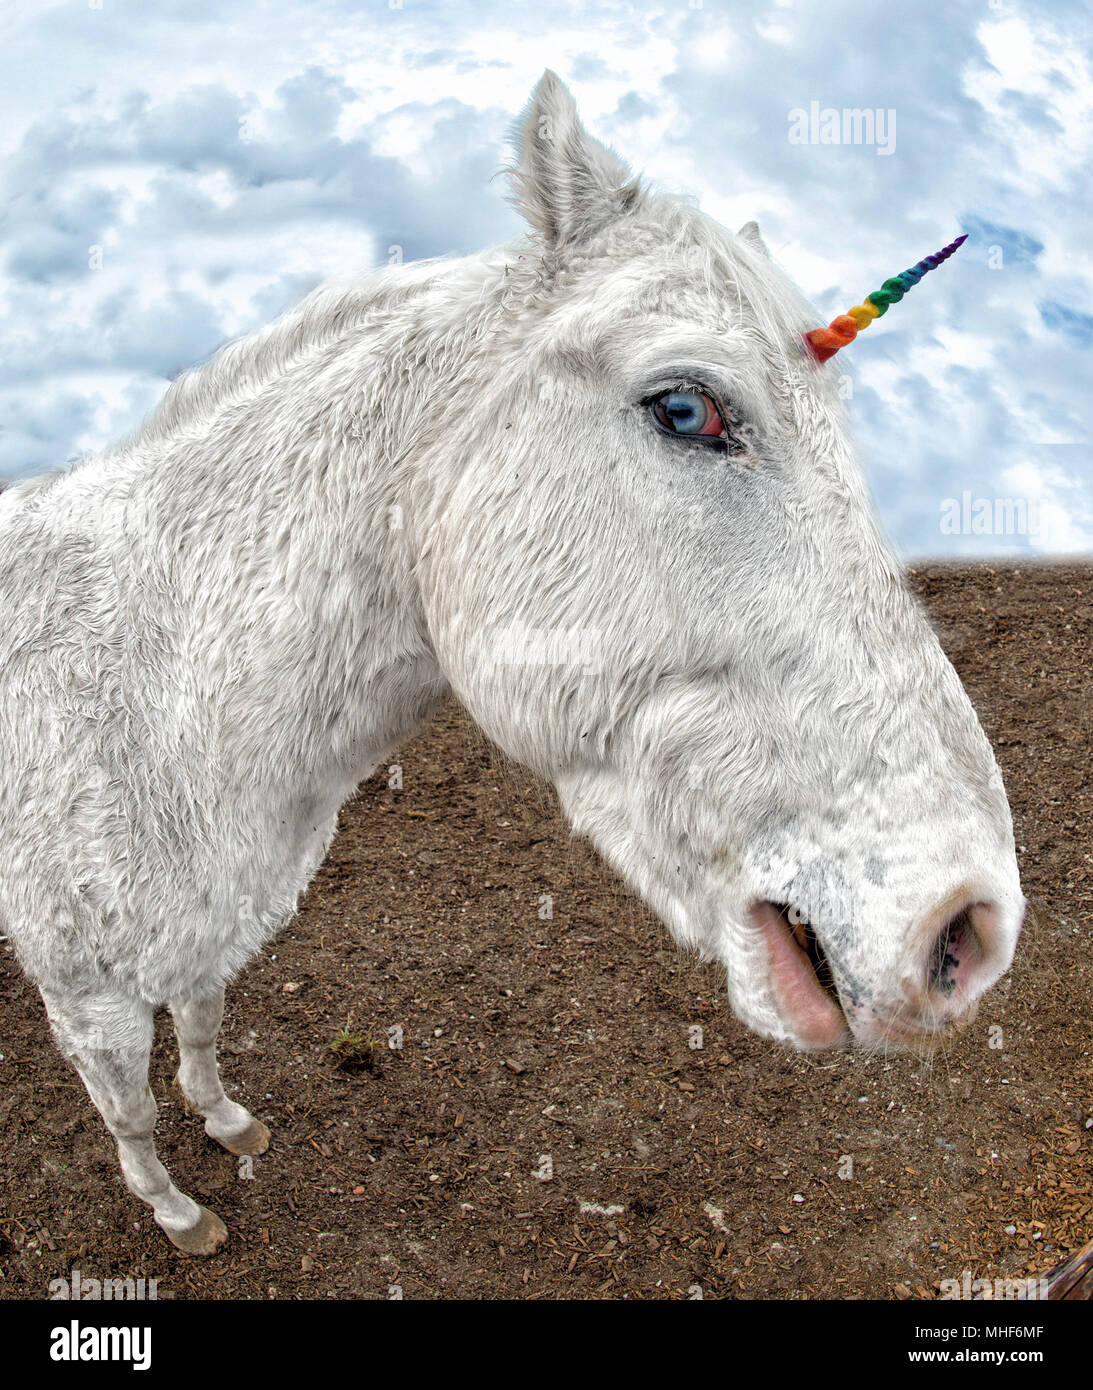 Vero unicorno immagini e fotografie stock ad alta risoluzione - Alamy